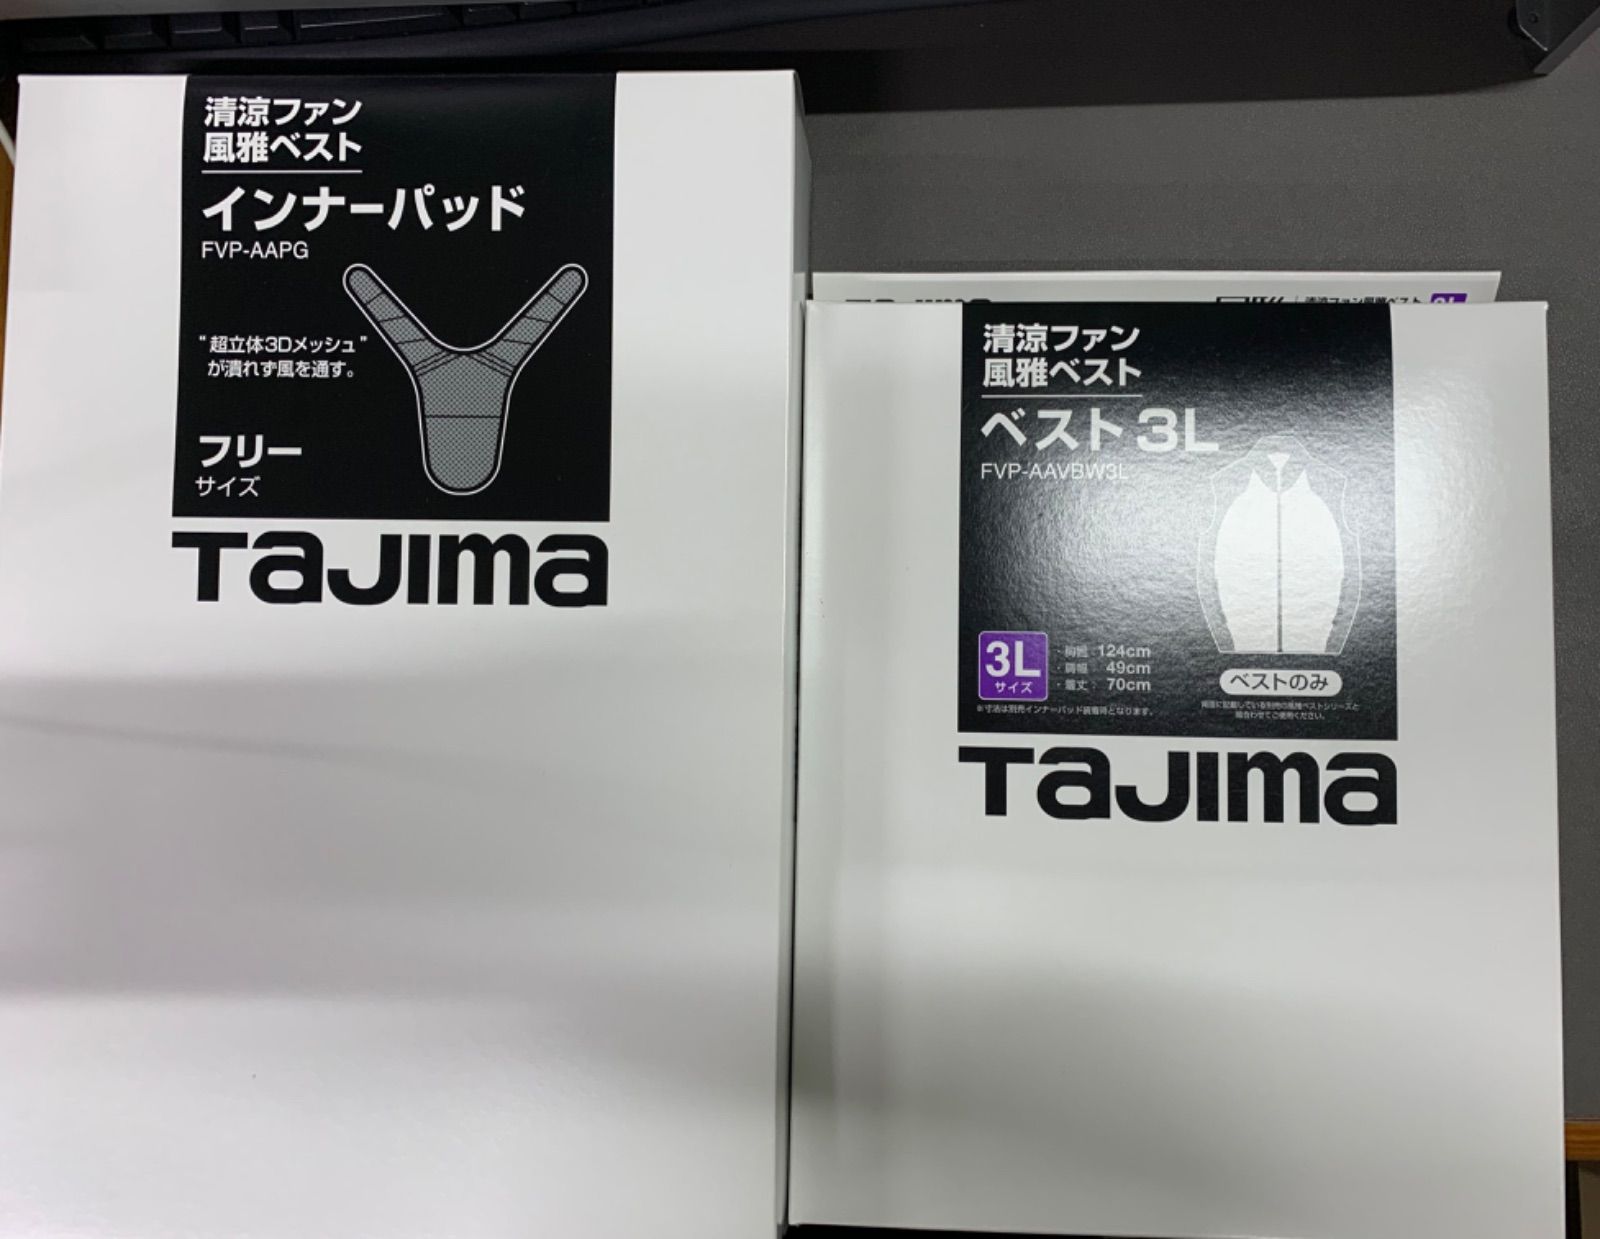 永遠の定番モデル タジマ Tajima 清涼ファン風雅ベスト インナーパッド FVP-AAPG